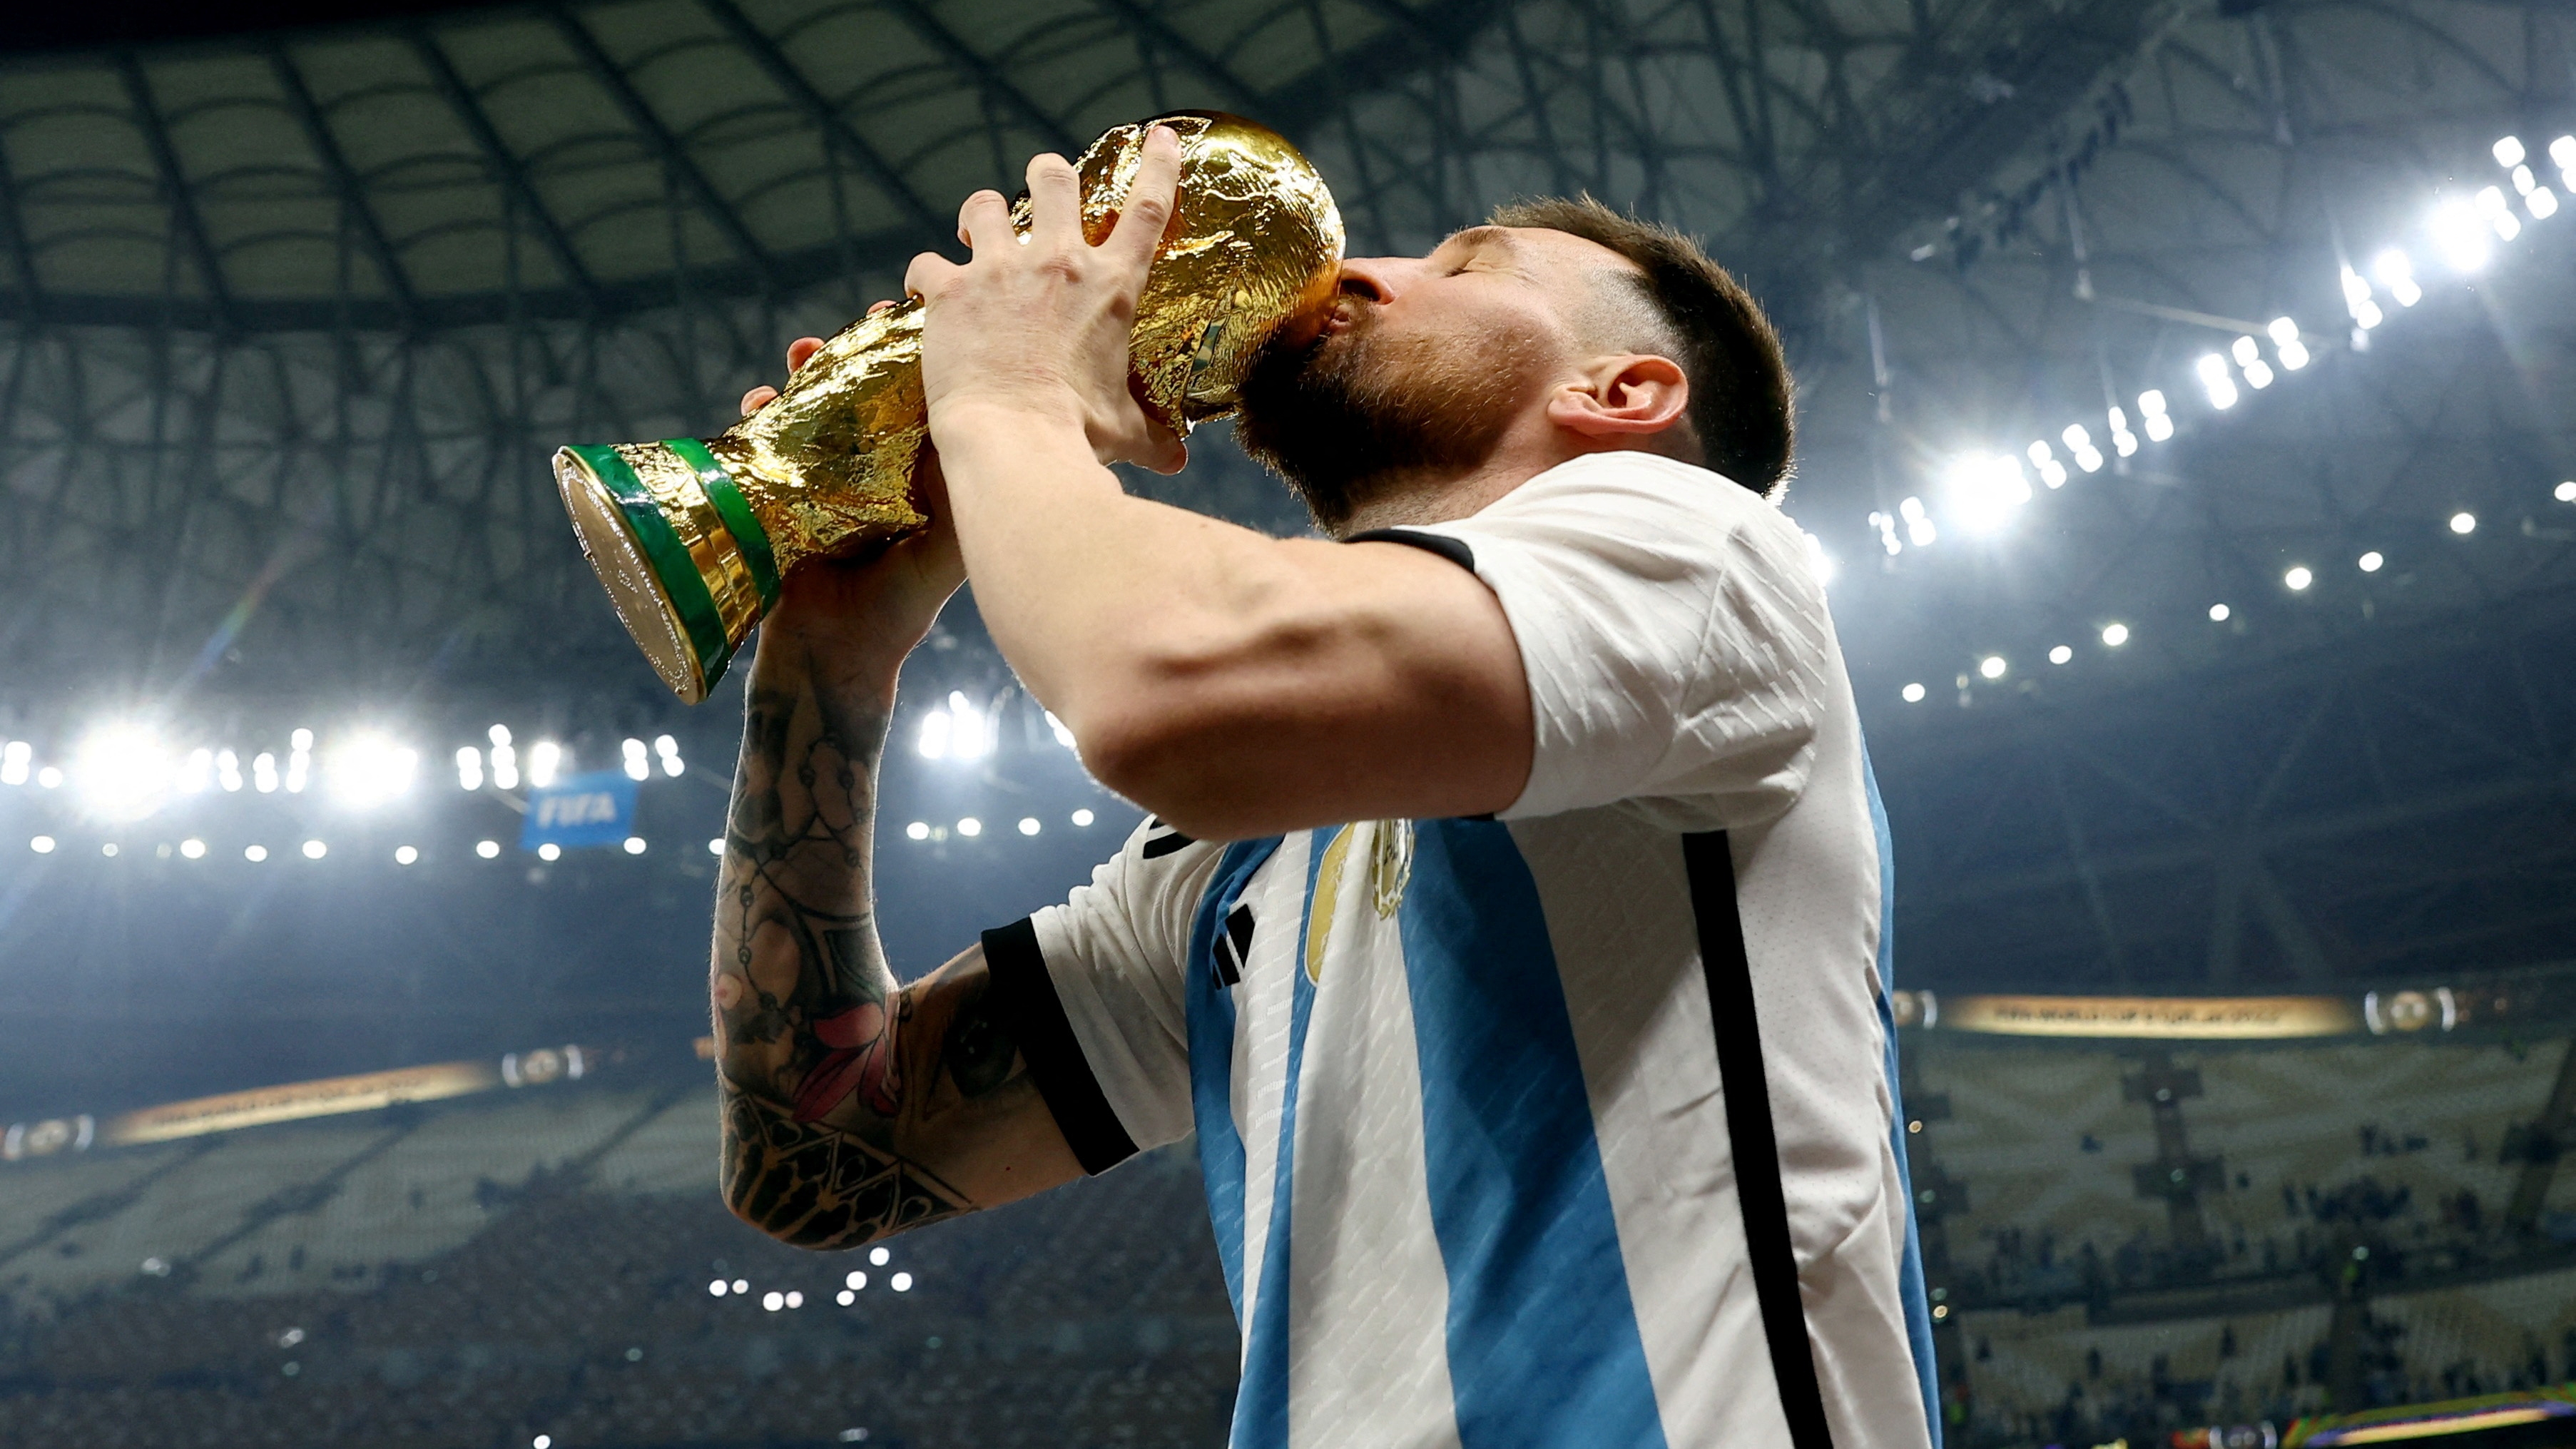 “Ojalá que si Messi se conoce la historia pueda llegar una copa a él”, sueña Pantano, que ya tocó el cielo con las manos (REUTERS/Hannah Mckay)